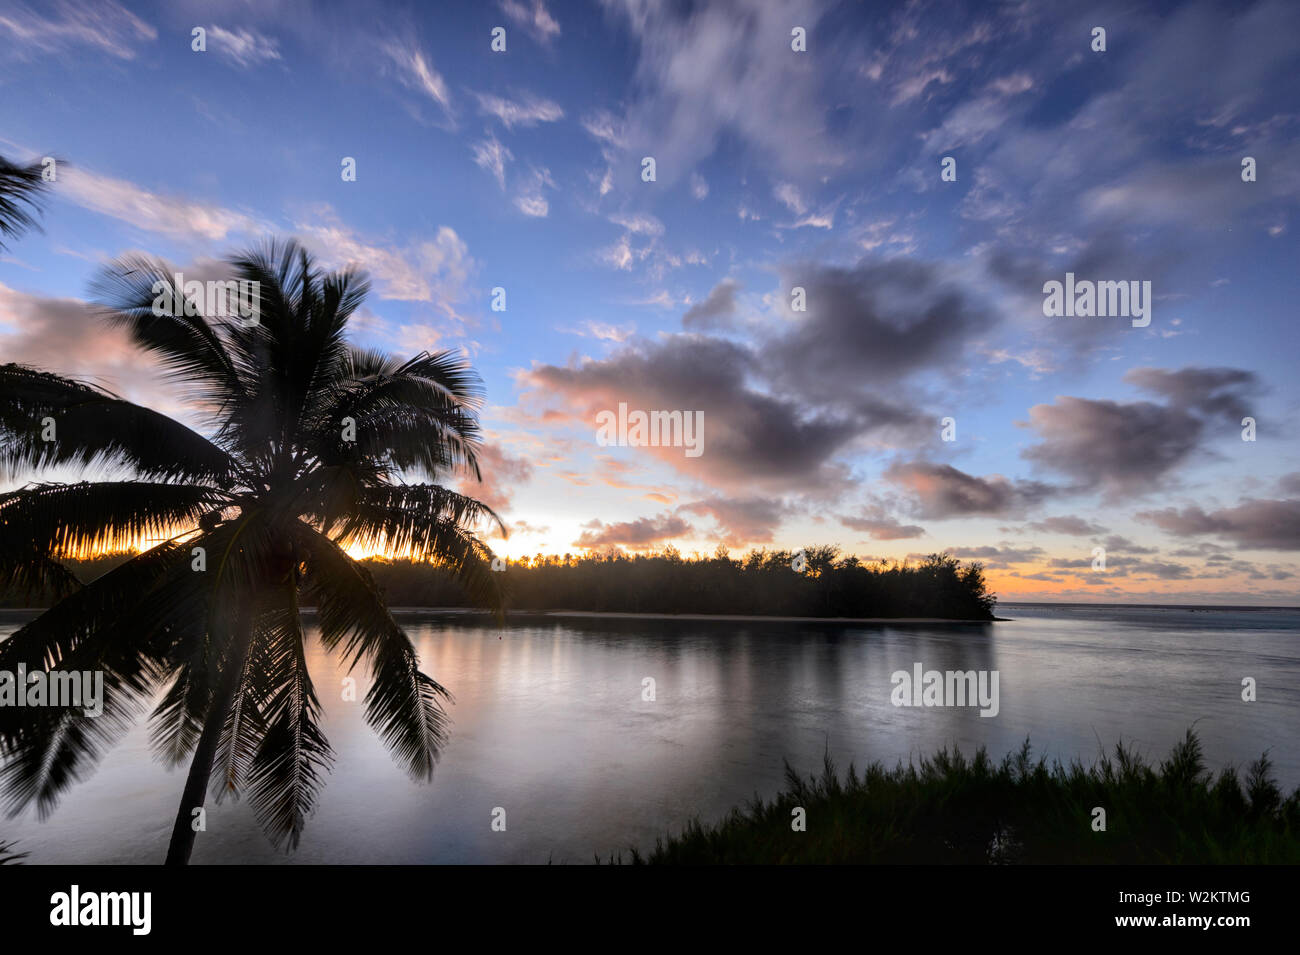 Atmosphärische Sonnenaufgang über Muri Strand und Lagune, mit einem rosa Himmel und eine Palme Silhouette, Rarotonga, Cook Inseln, Polynesien Stockfoto